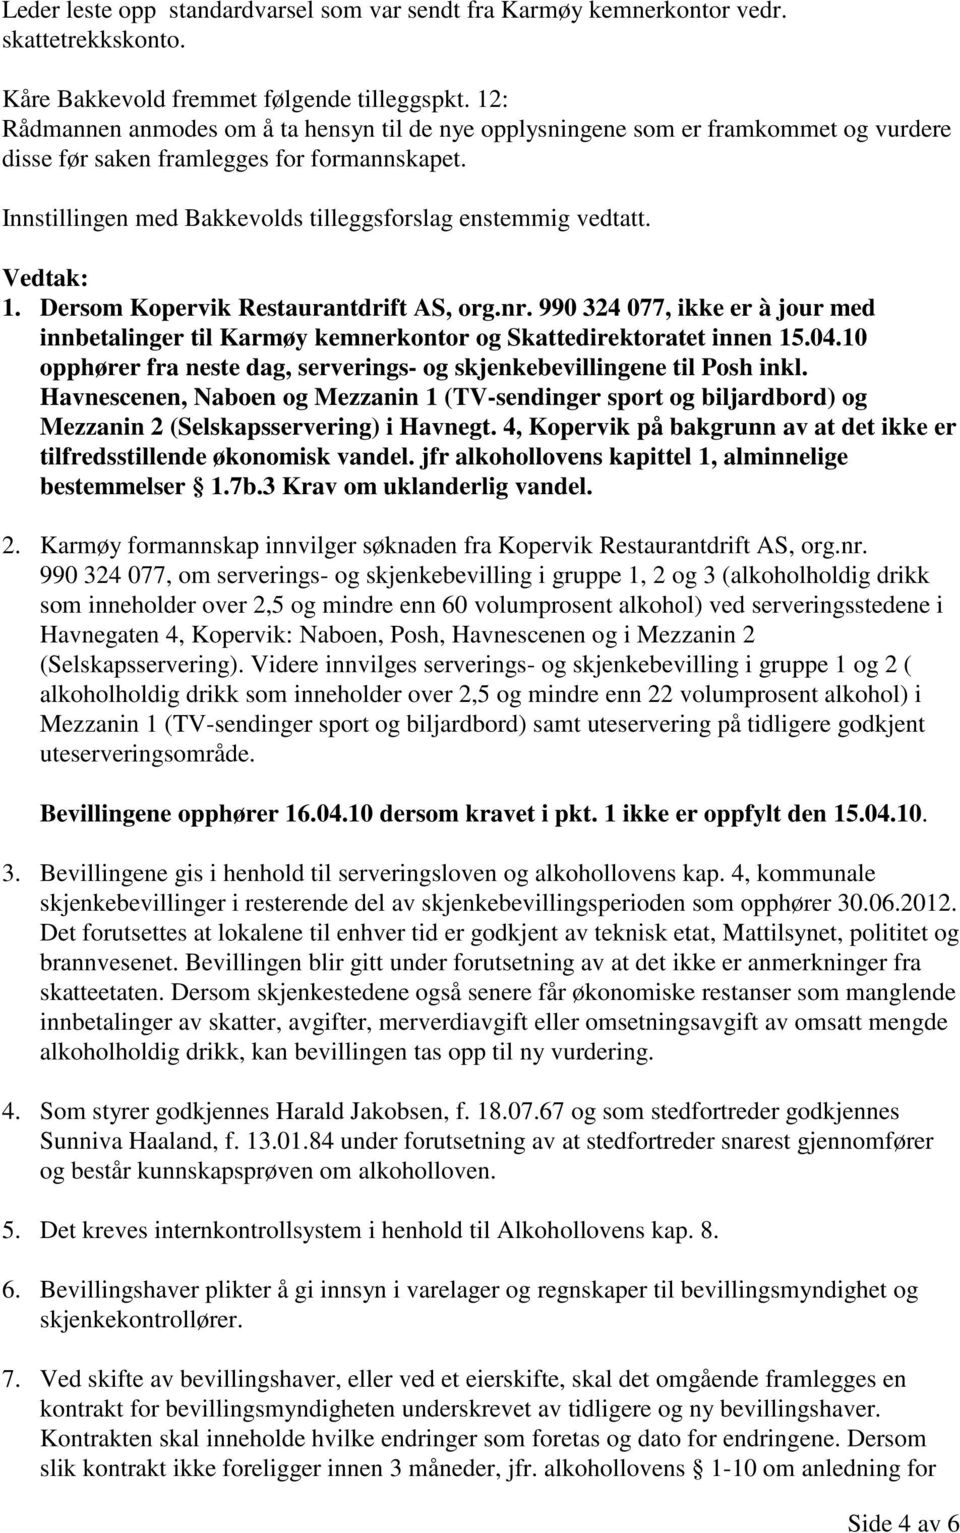 Vedtak: 1. Dersom Kopervik Restaurantdrift AS, org.nr. 990 324 077, ikke er à jour med innbetalinger til Karmøy kemnerkontor og Skattedirektoratet innen 15.04.